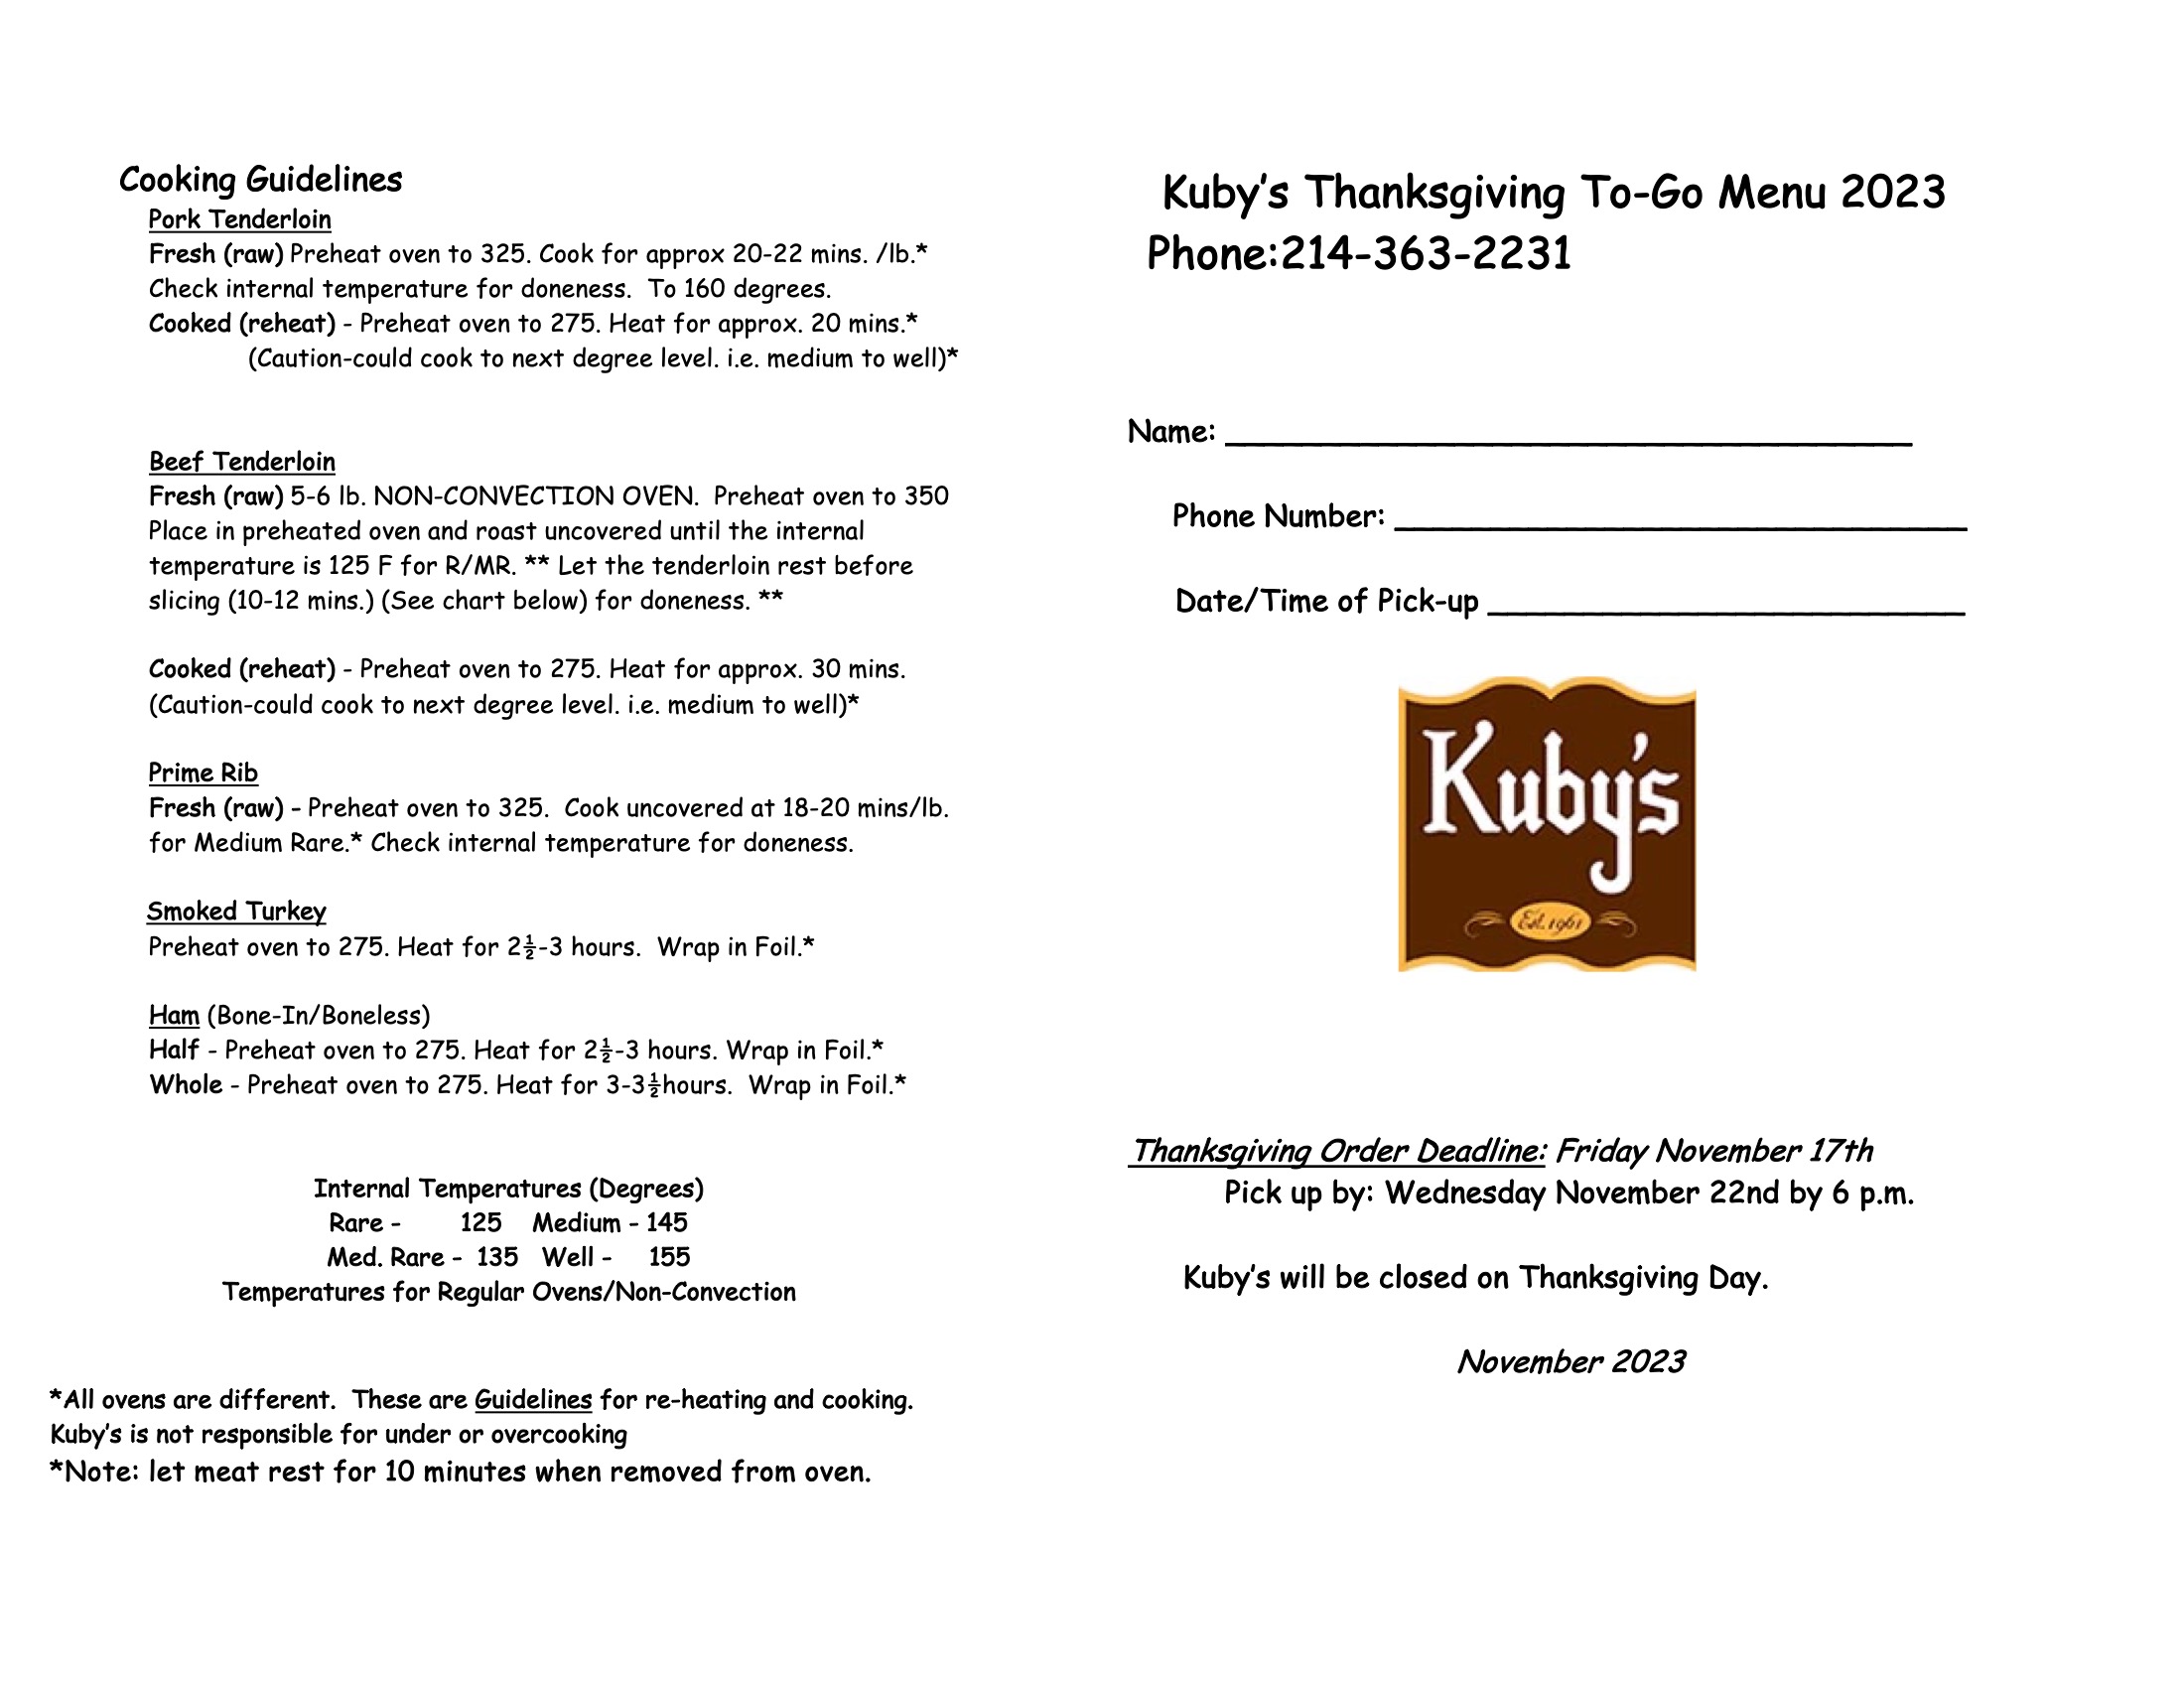 Kubys Thanksgiving Menu 2023 - page 2